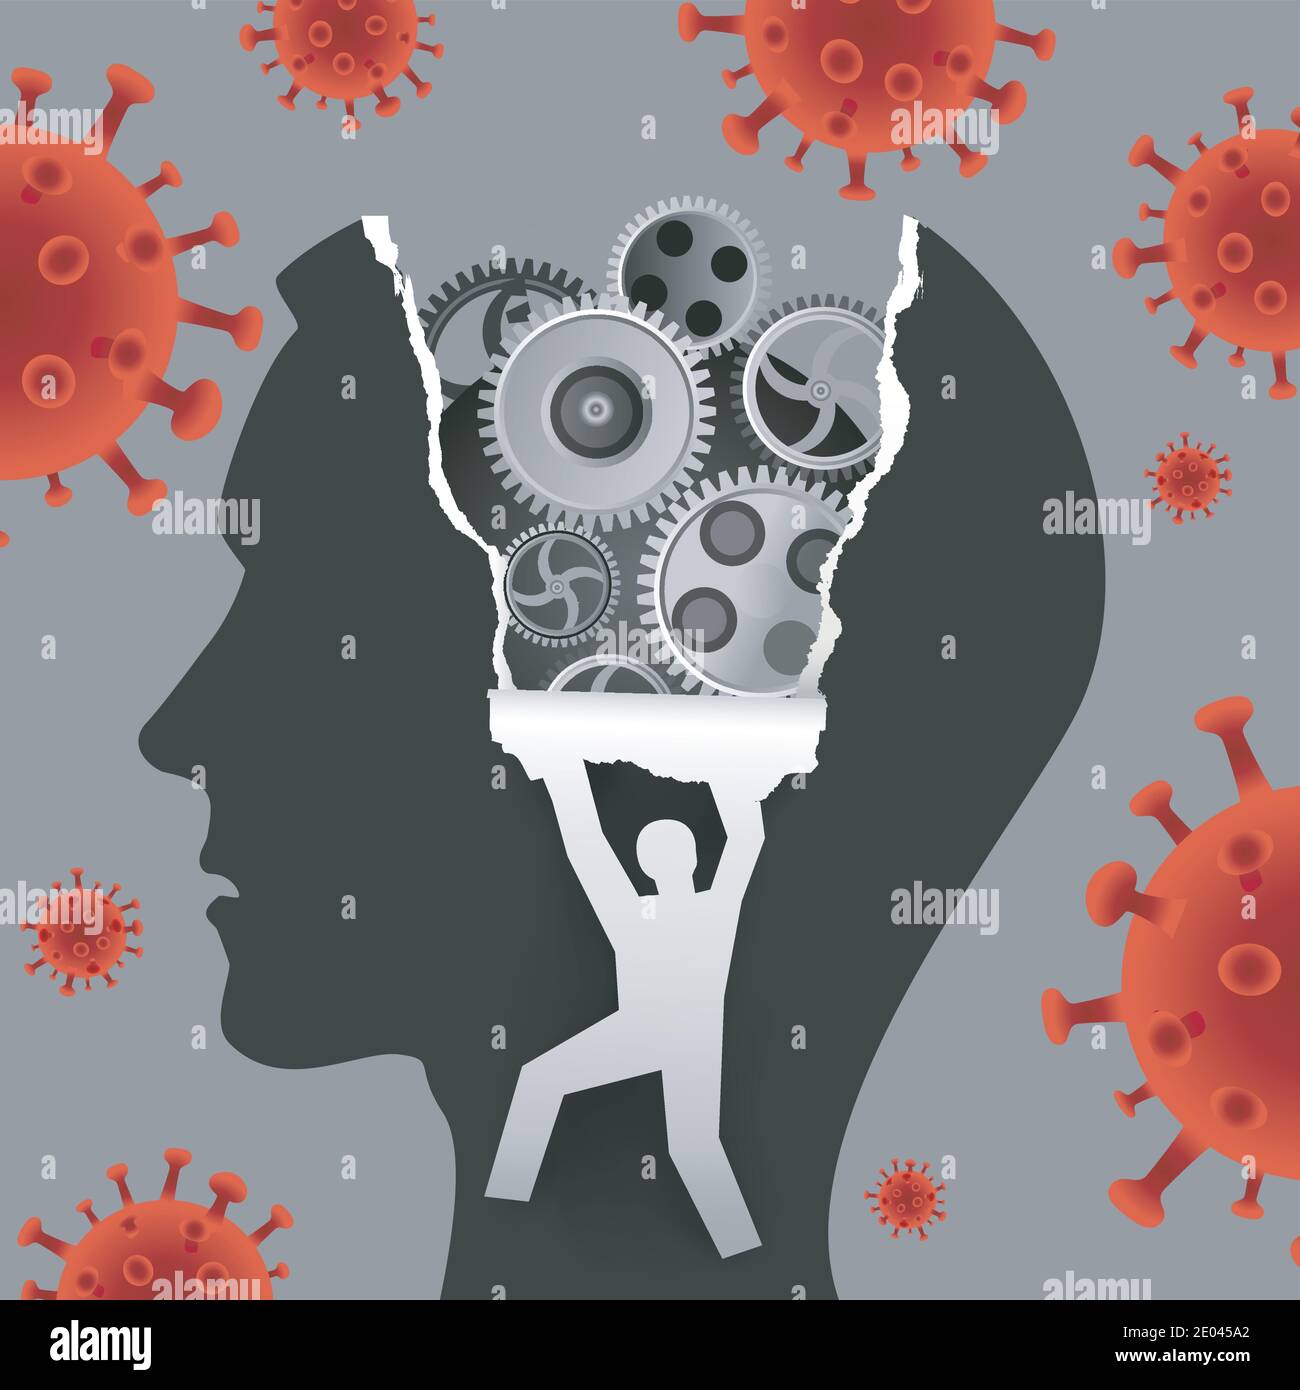 Psychologische Untersuchung, Depression während der Coronavirus-Pandemie. Männlicher Kopf im Profil mit Getriebe und männliche Silhouette ripping Papier Hintergrund. Stock Vektor